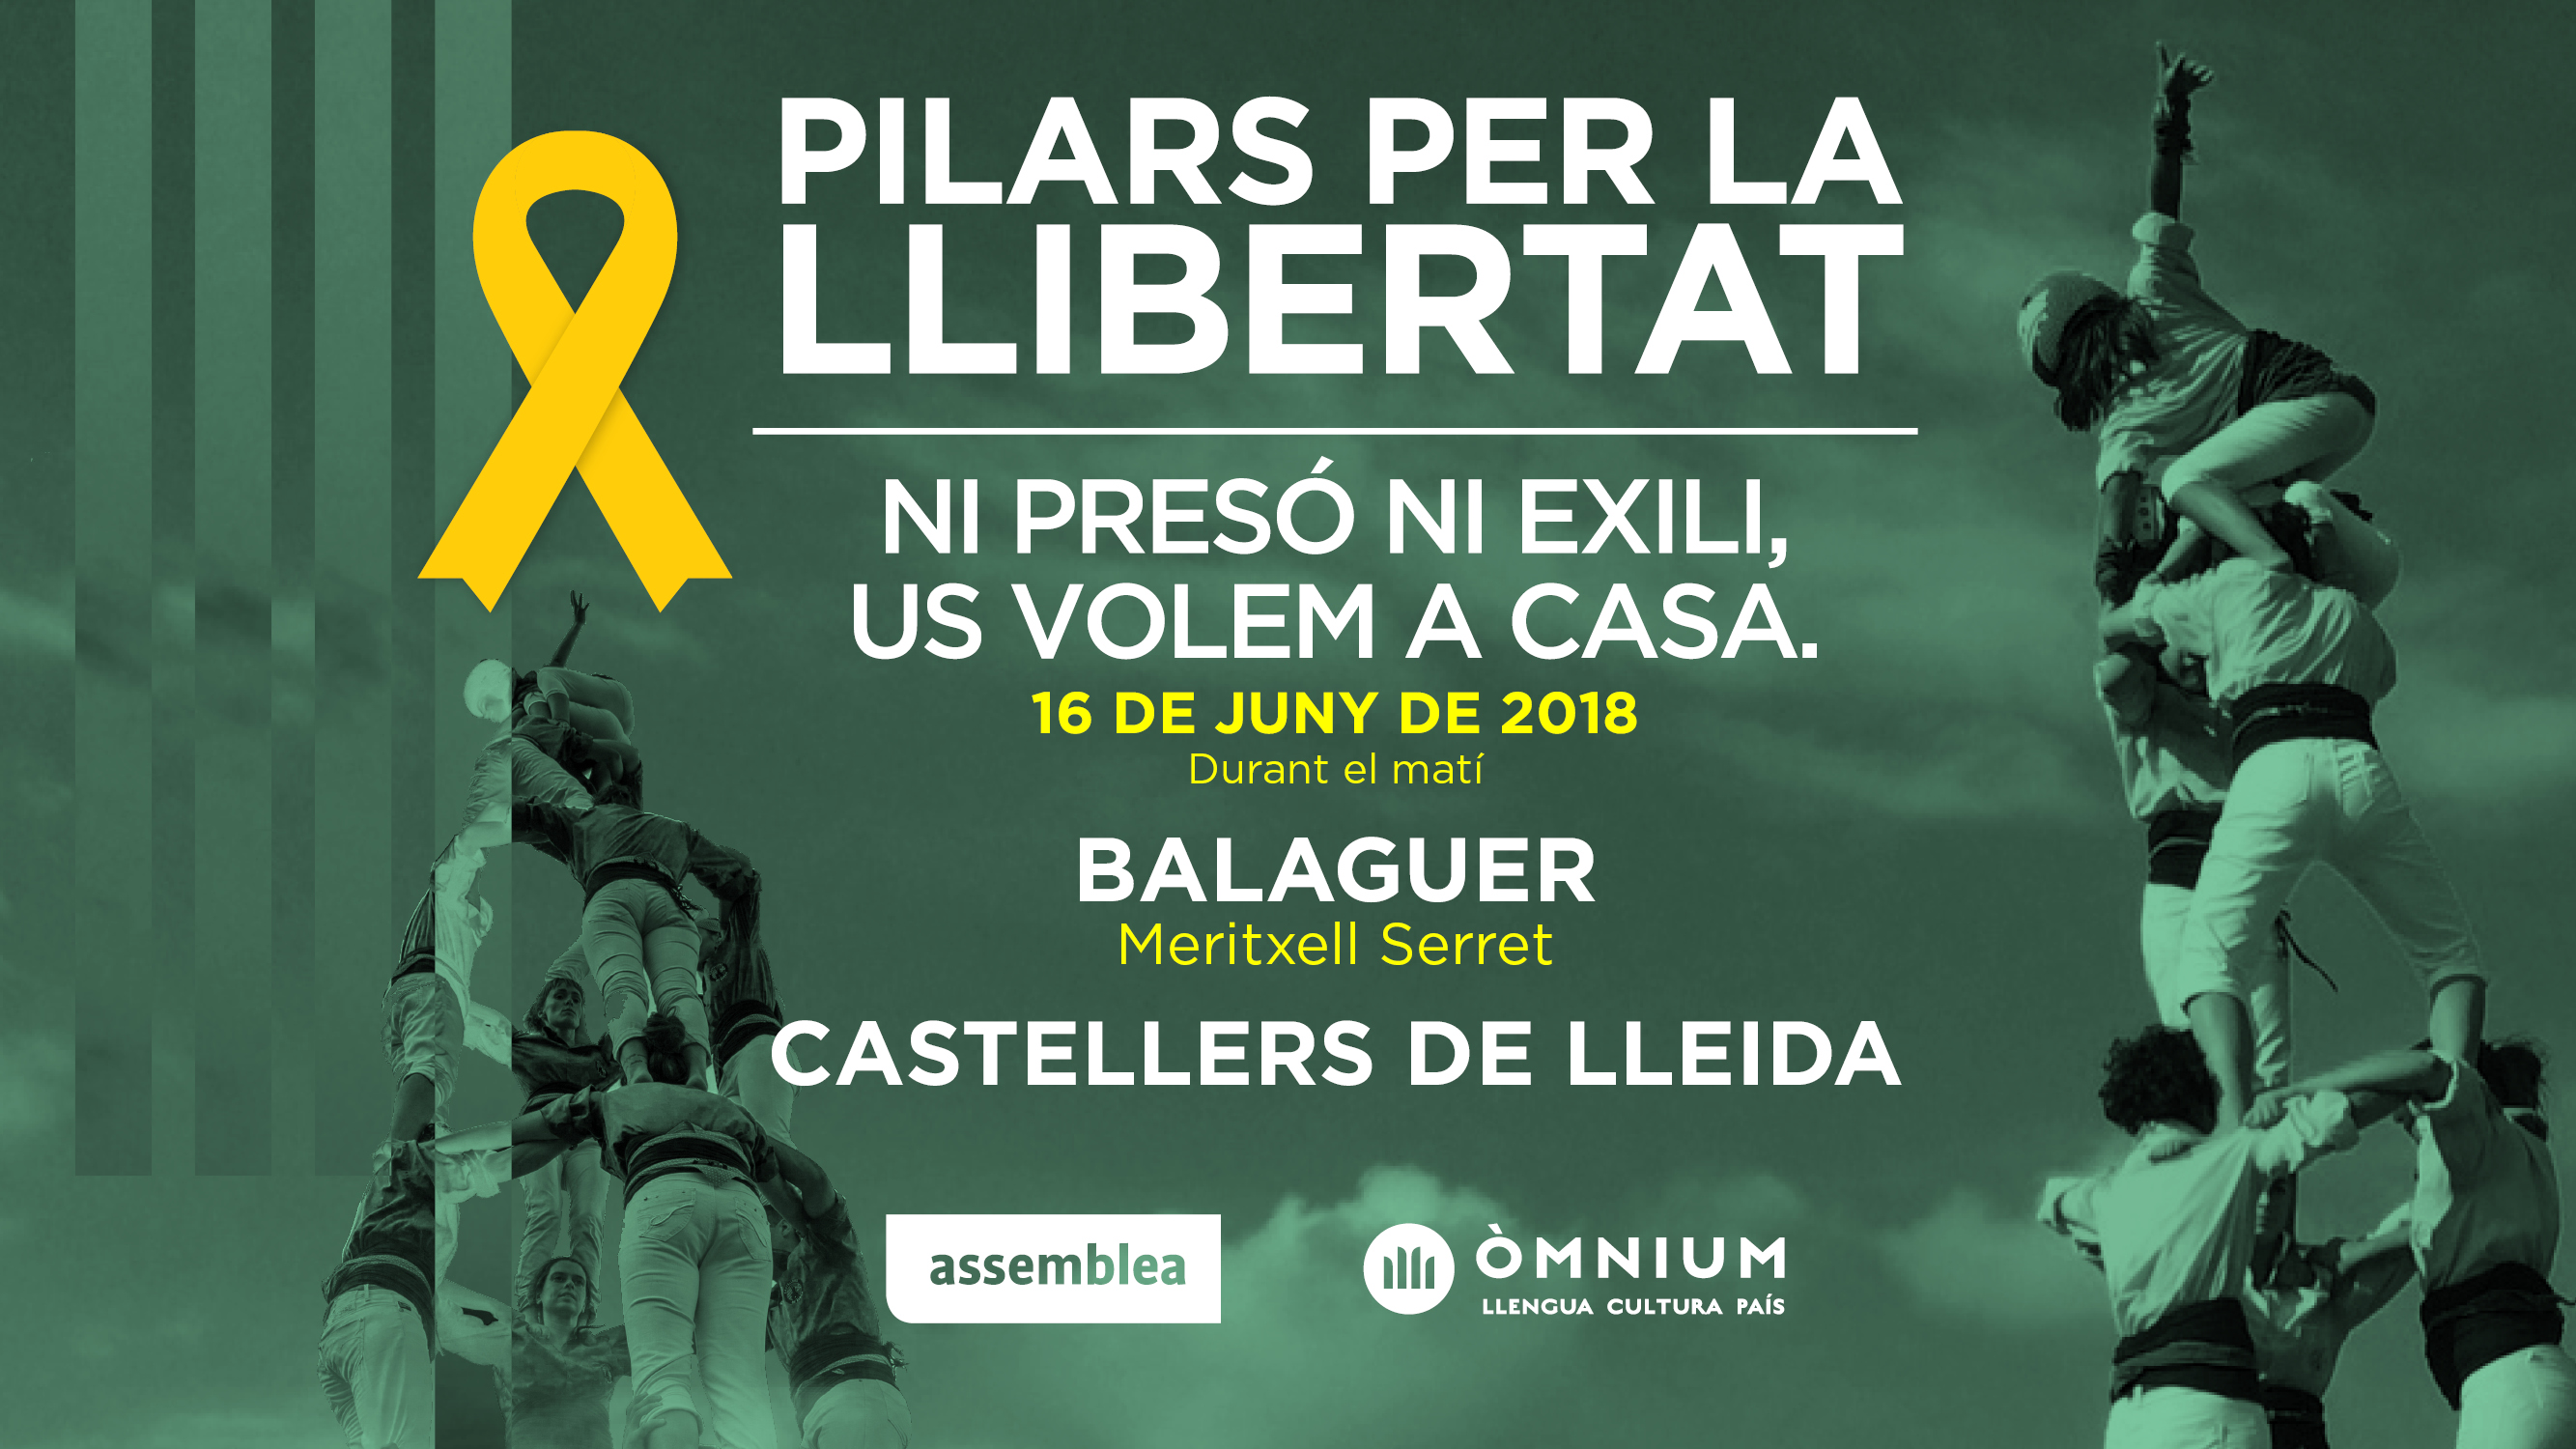 Balaguer - Pilars per la Llibertat